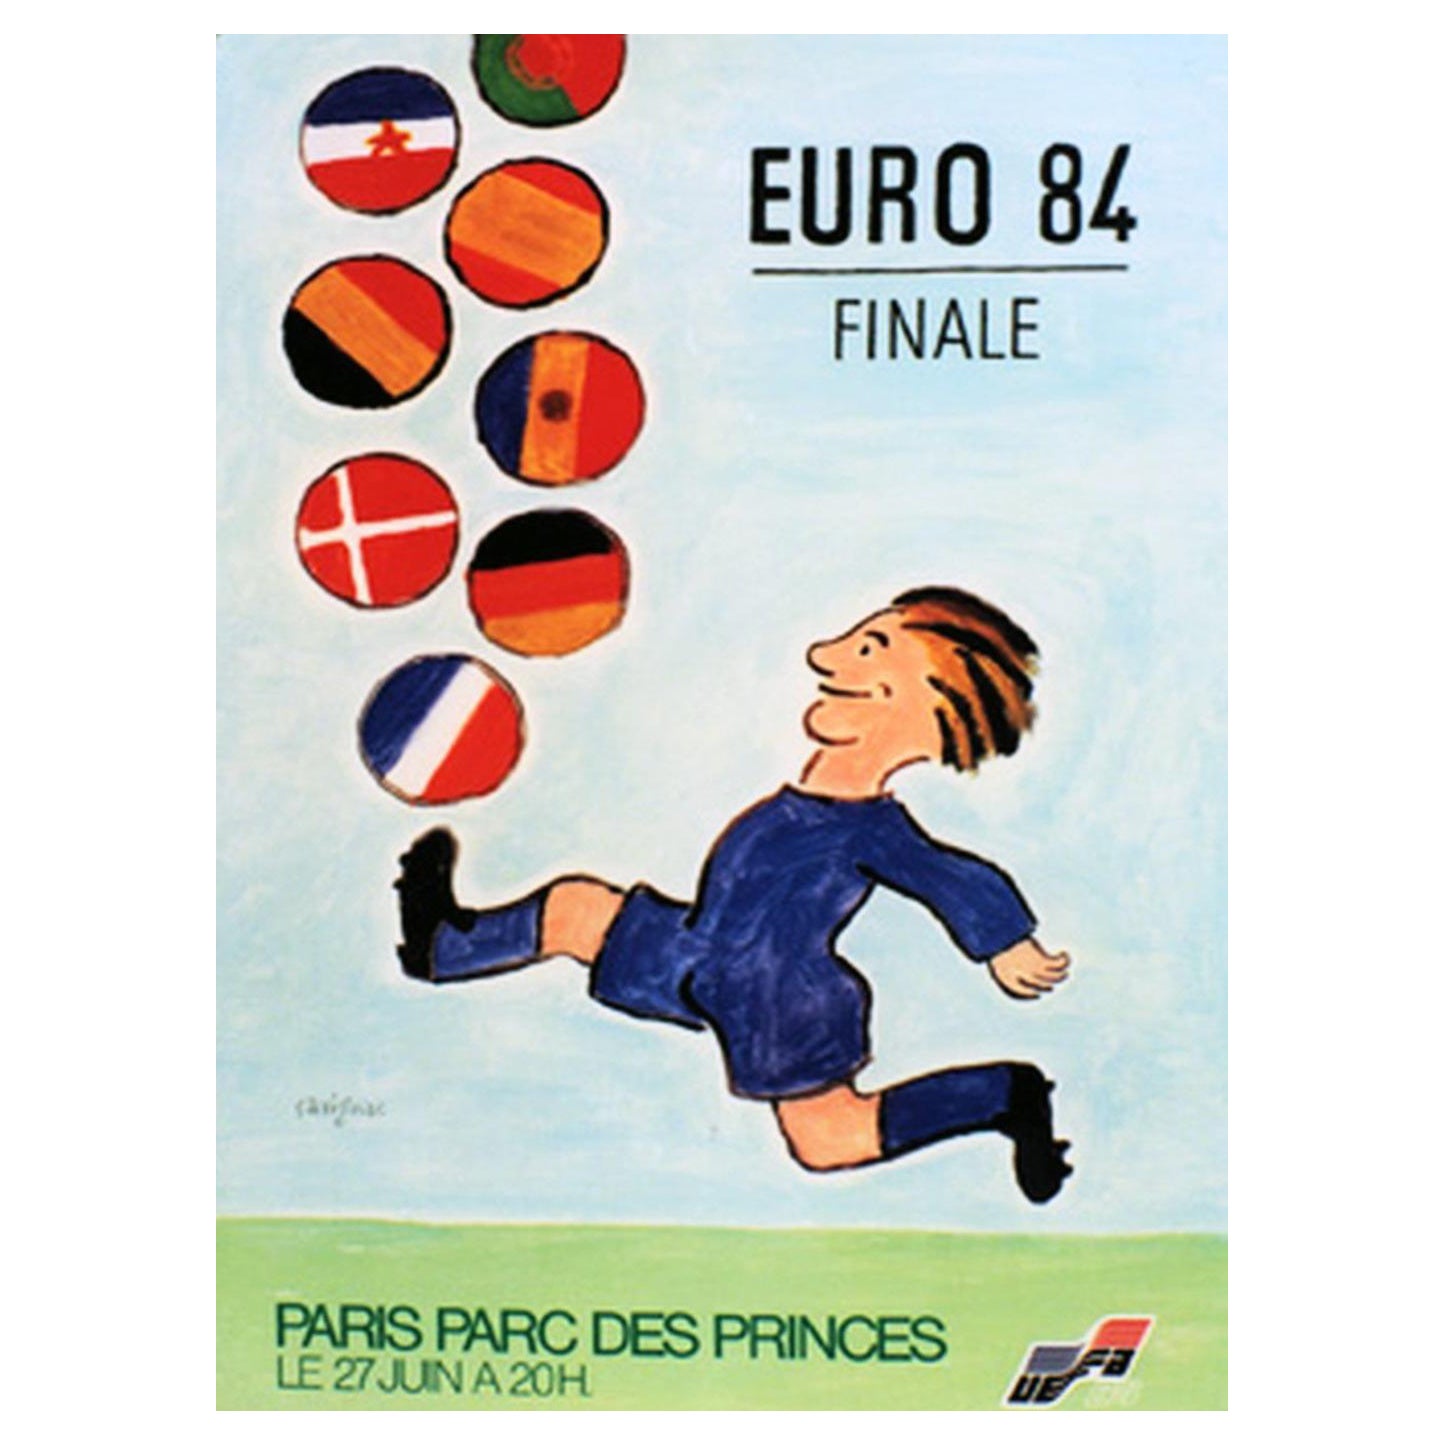 1984 Euro 84 - Finale Original Vintage Poster For Sale